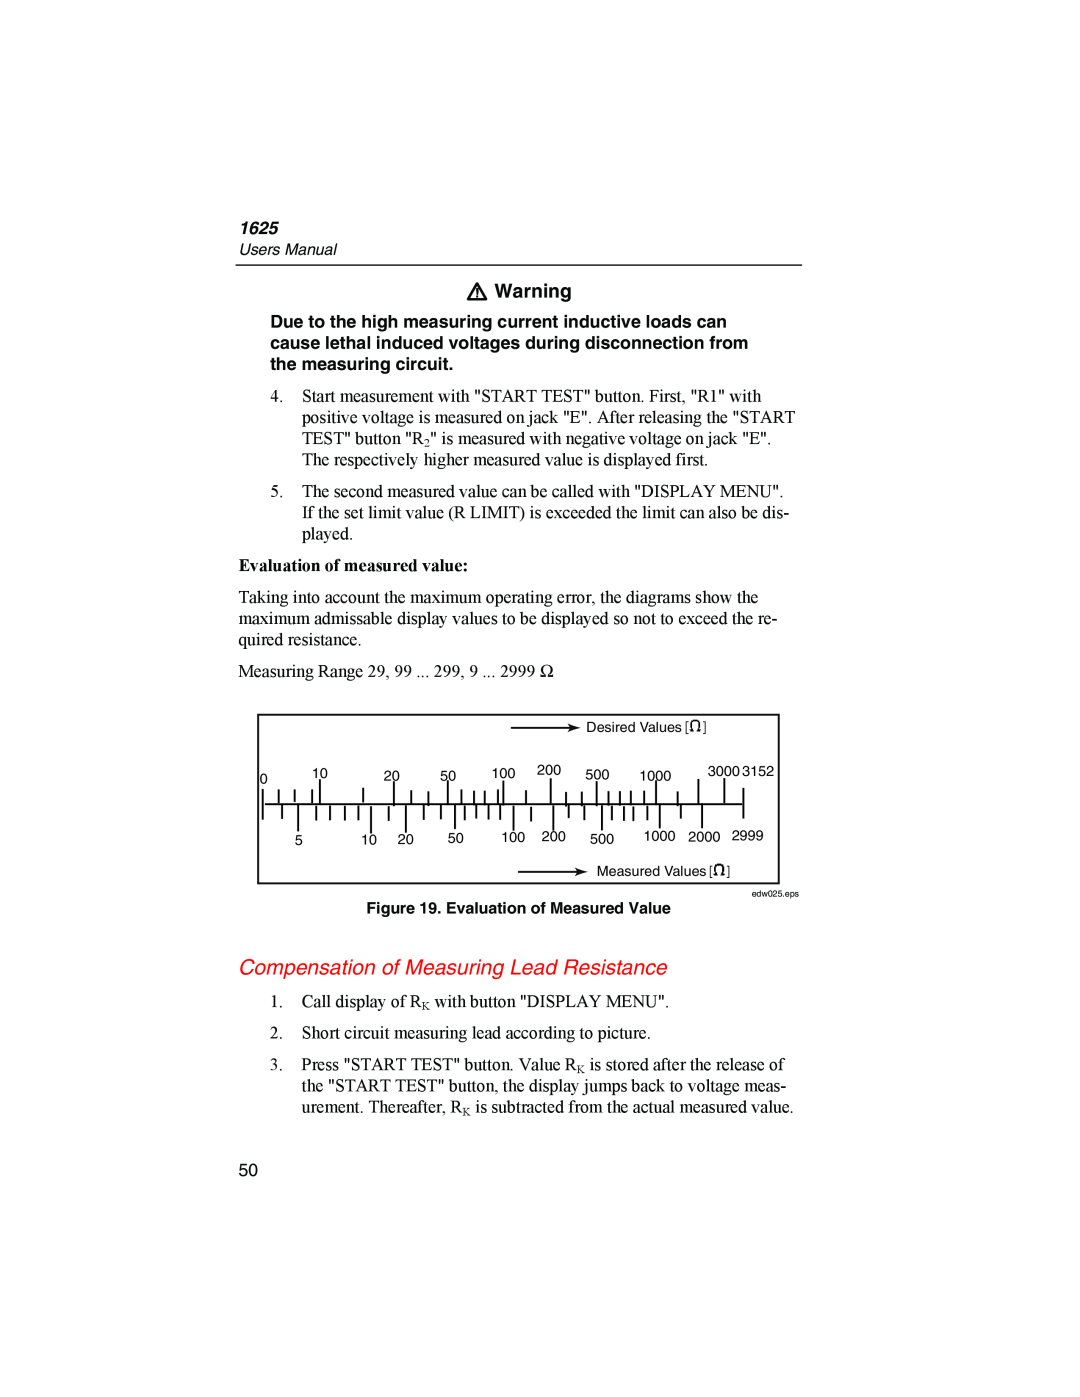 Fluke 1625 user manual Compensation of Measuring Lead Resistance, W Warning, Evaluation of measured value 